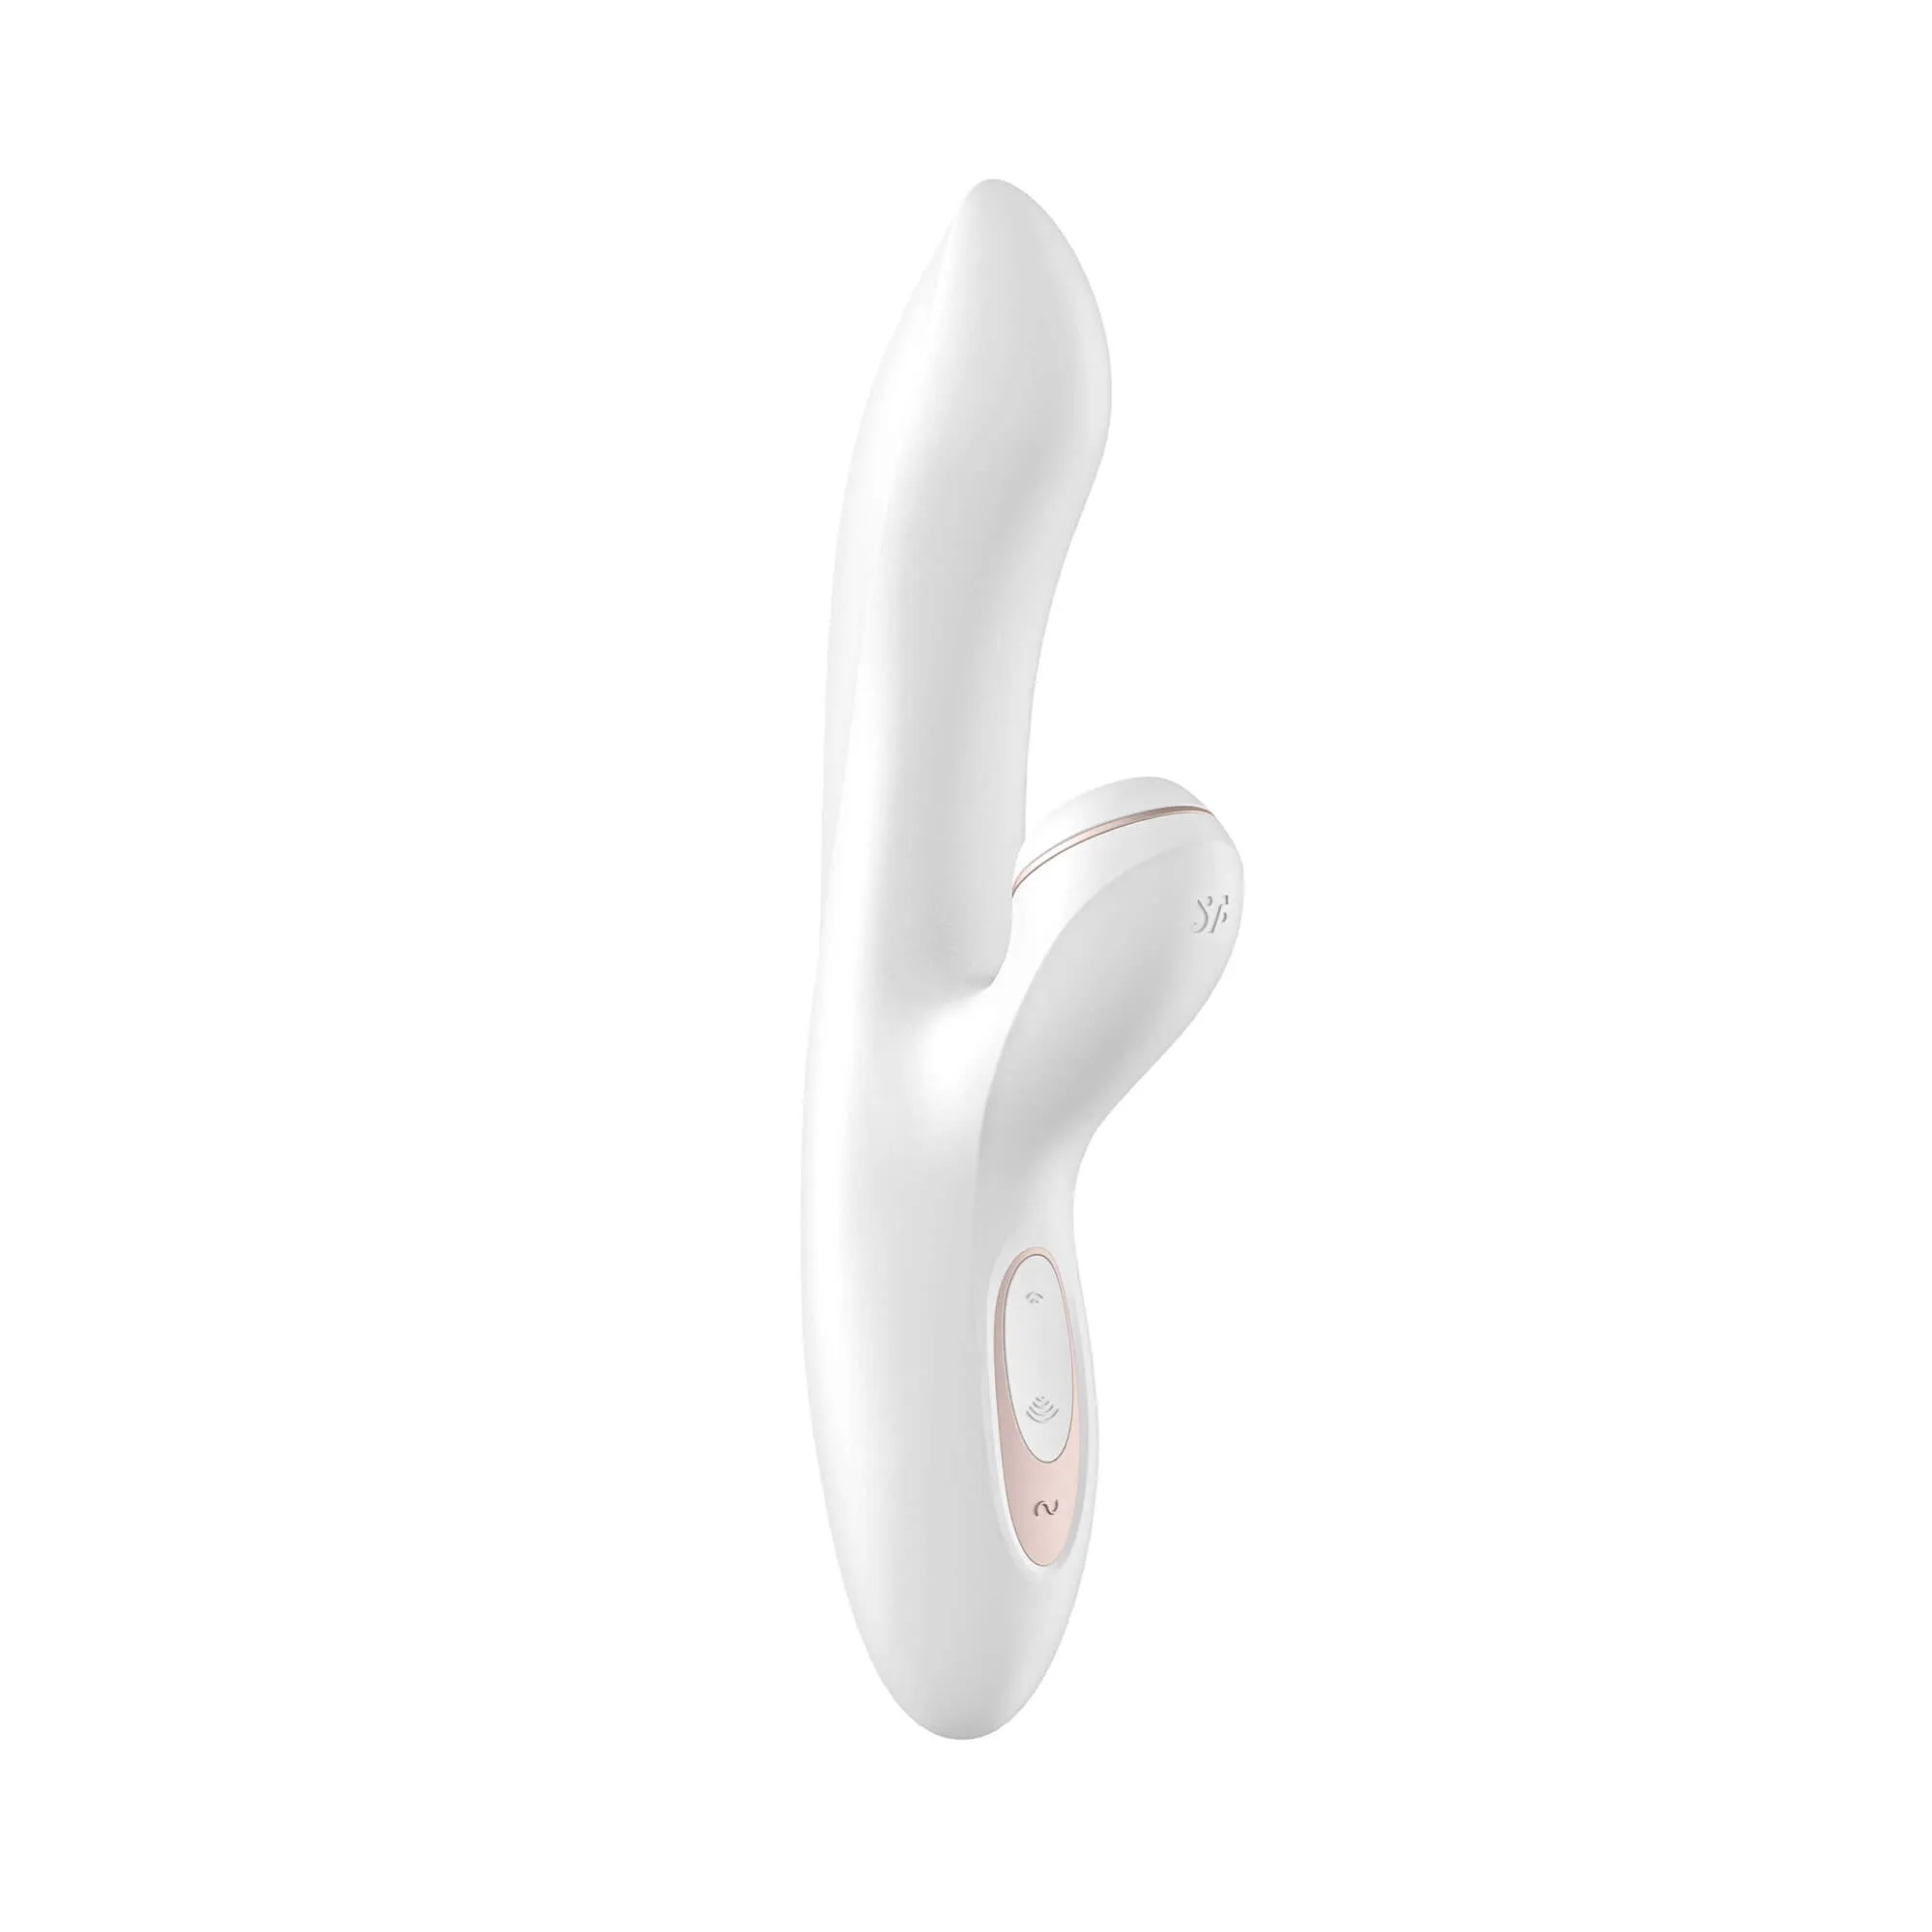 Úžasný vibrátor, který zároveň stimuluje klitoris sáním, ale nezapomíná ani na kouzelný G-bod